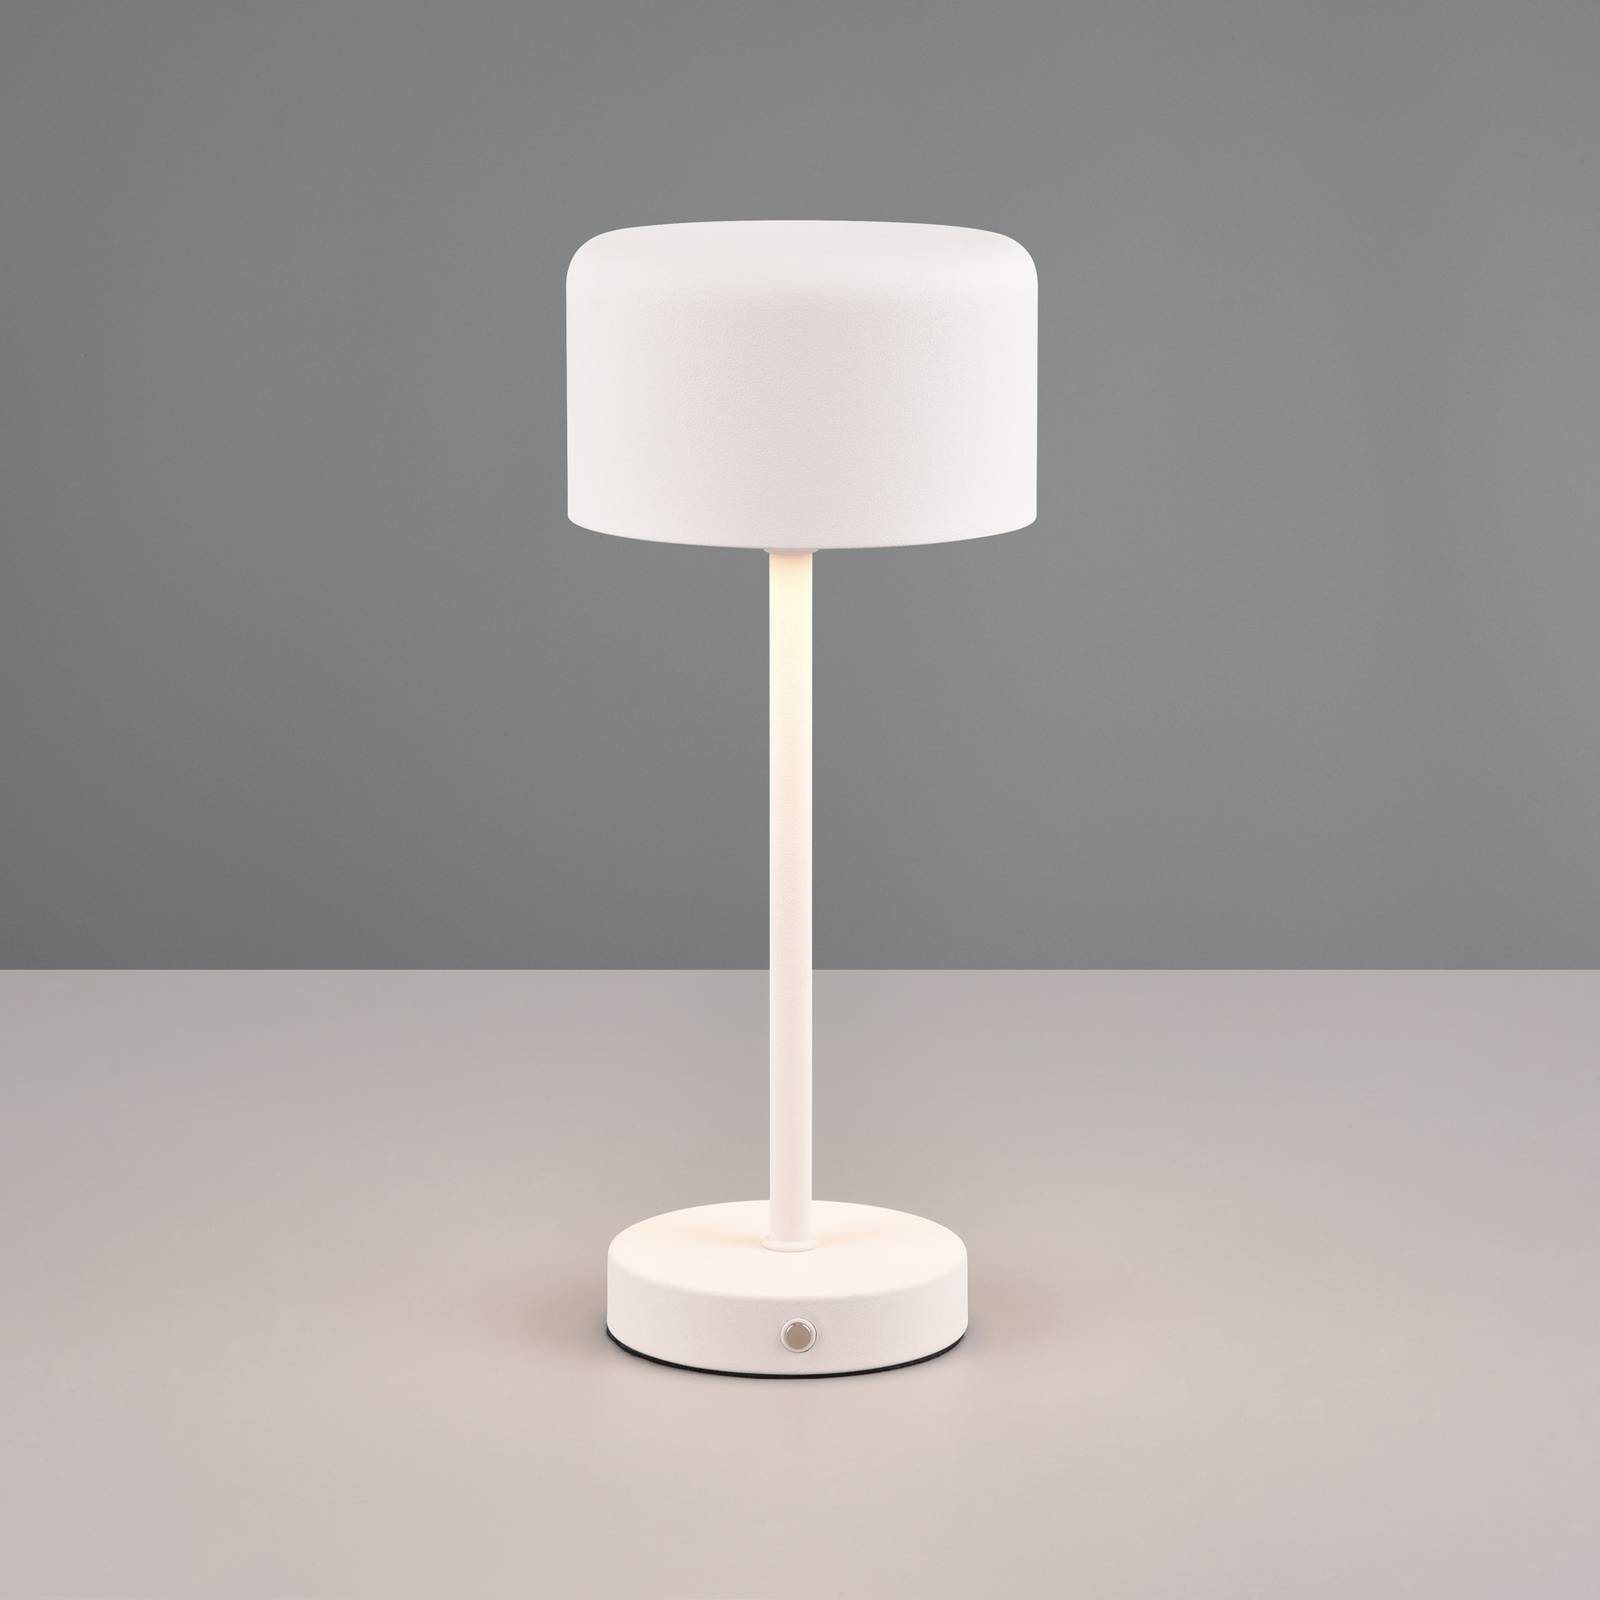 Jeff LED oppladbar bordlampe matt hvit høyde 30 cm metall